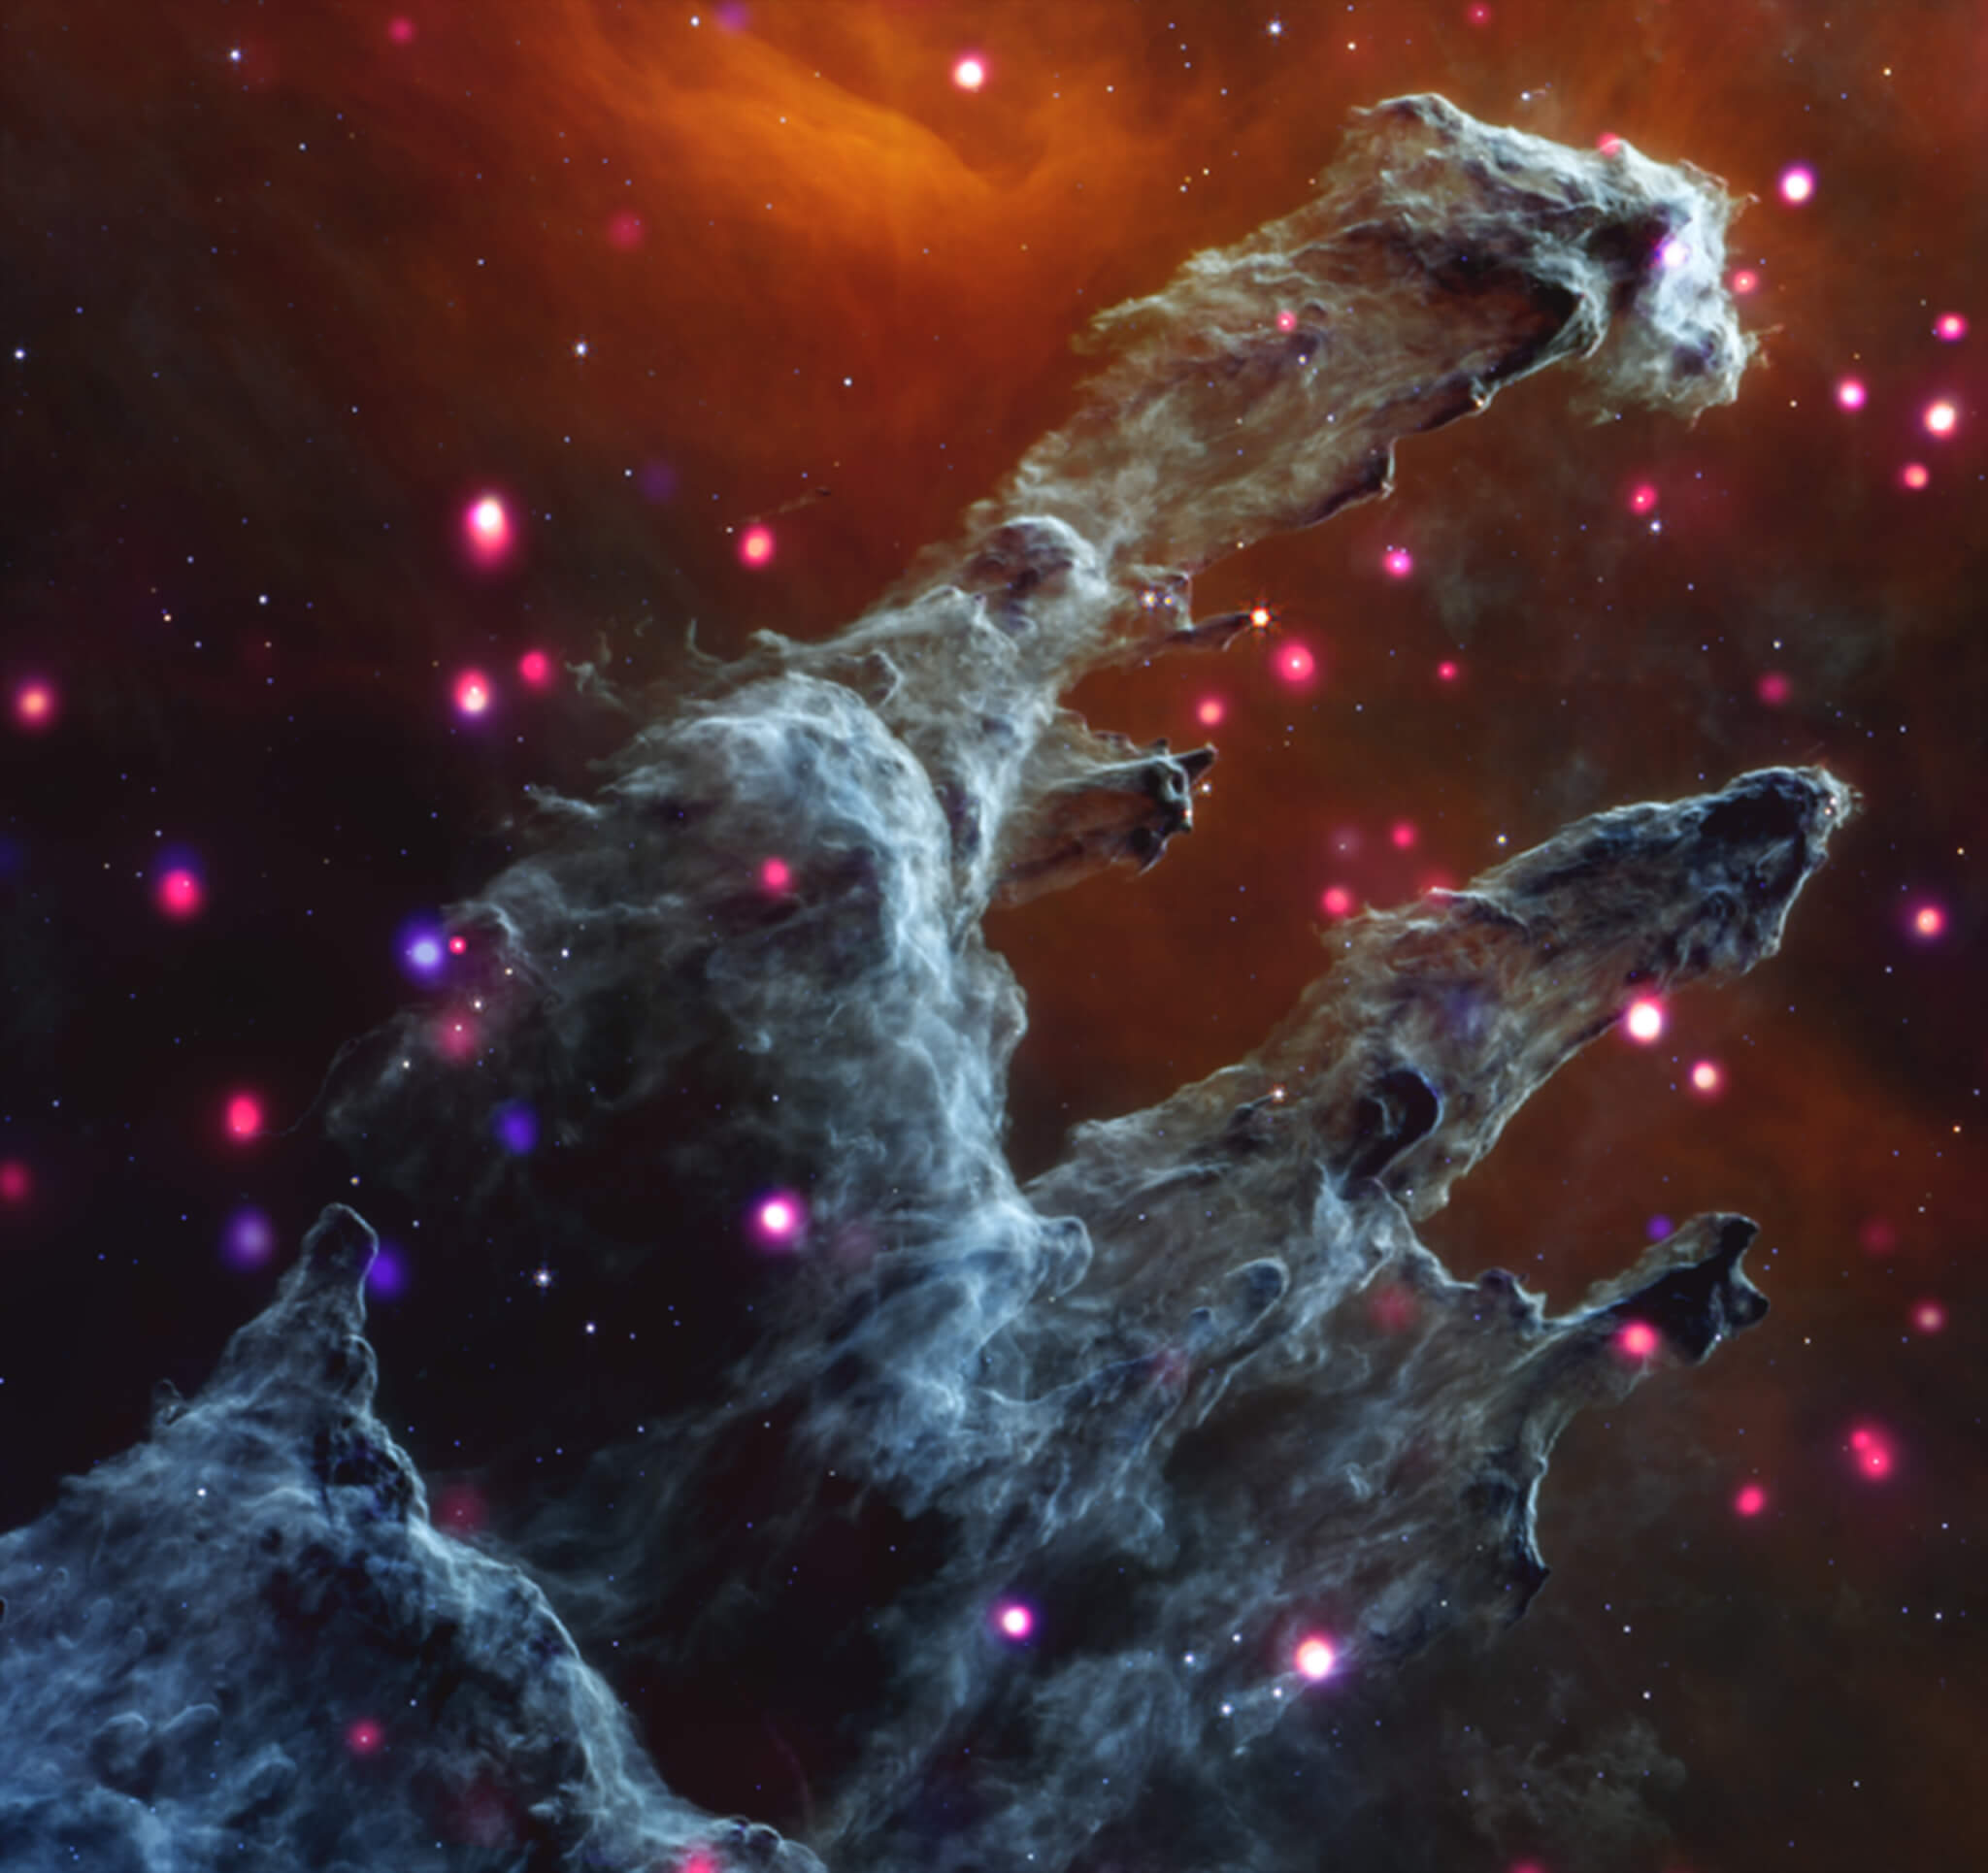 Image of the Eagle nebula